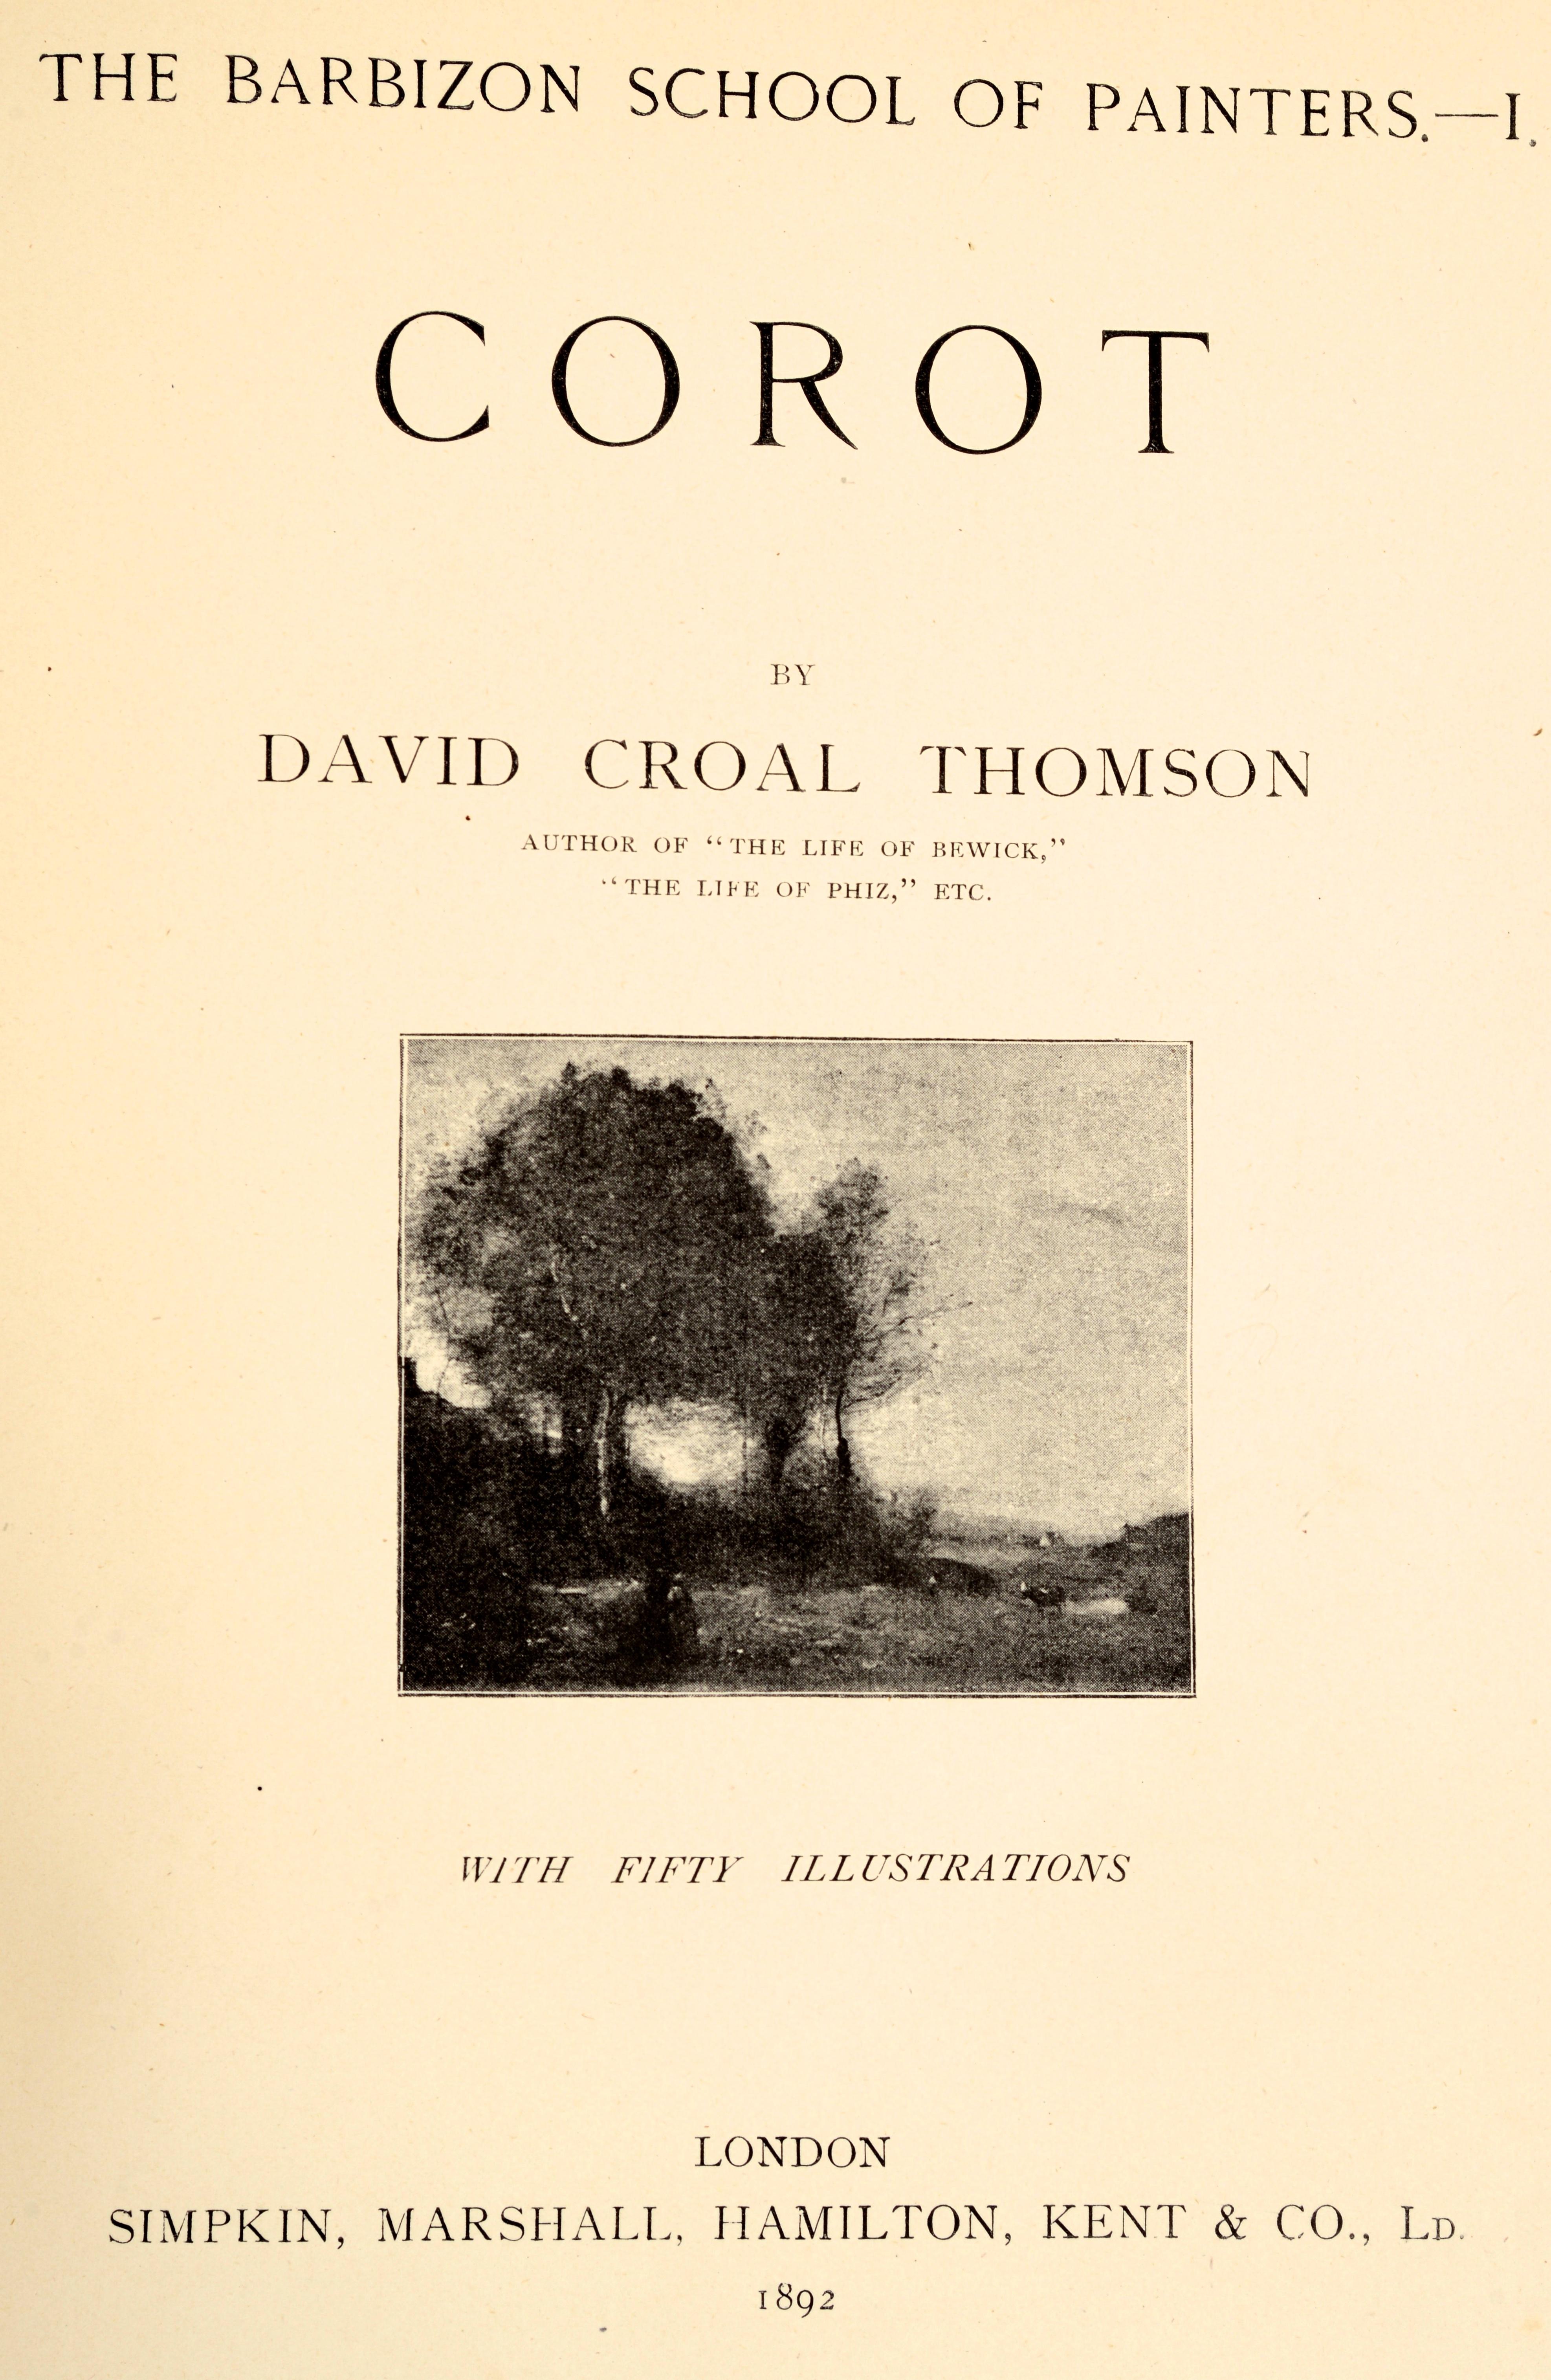 École de peintres de Barbizon : Corot de David Thomson, plaque de livre Thos. Barratt Bon état - En vente à valatie, NY